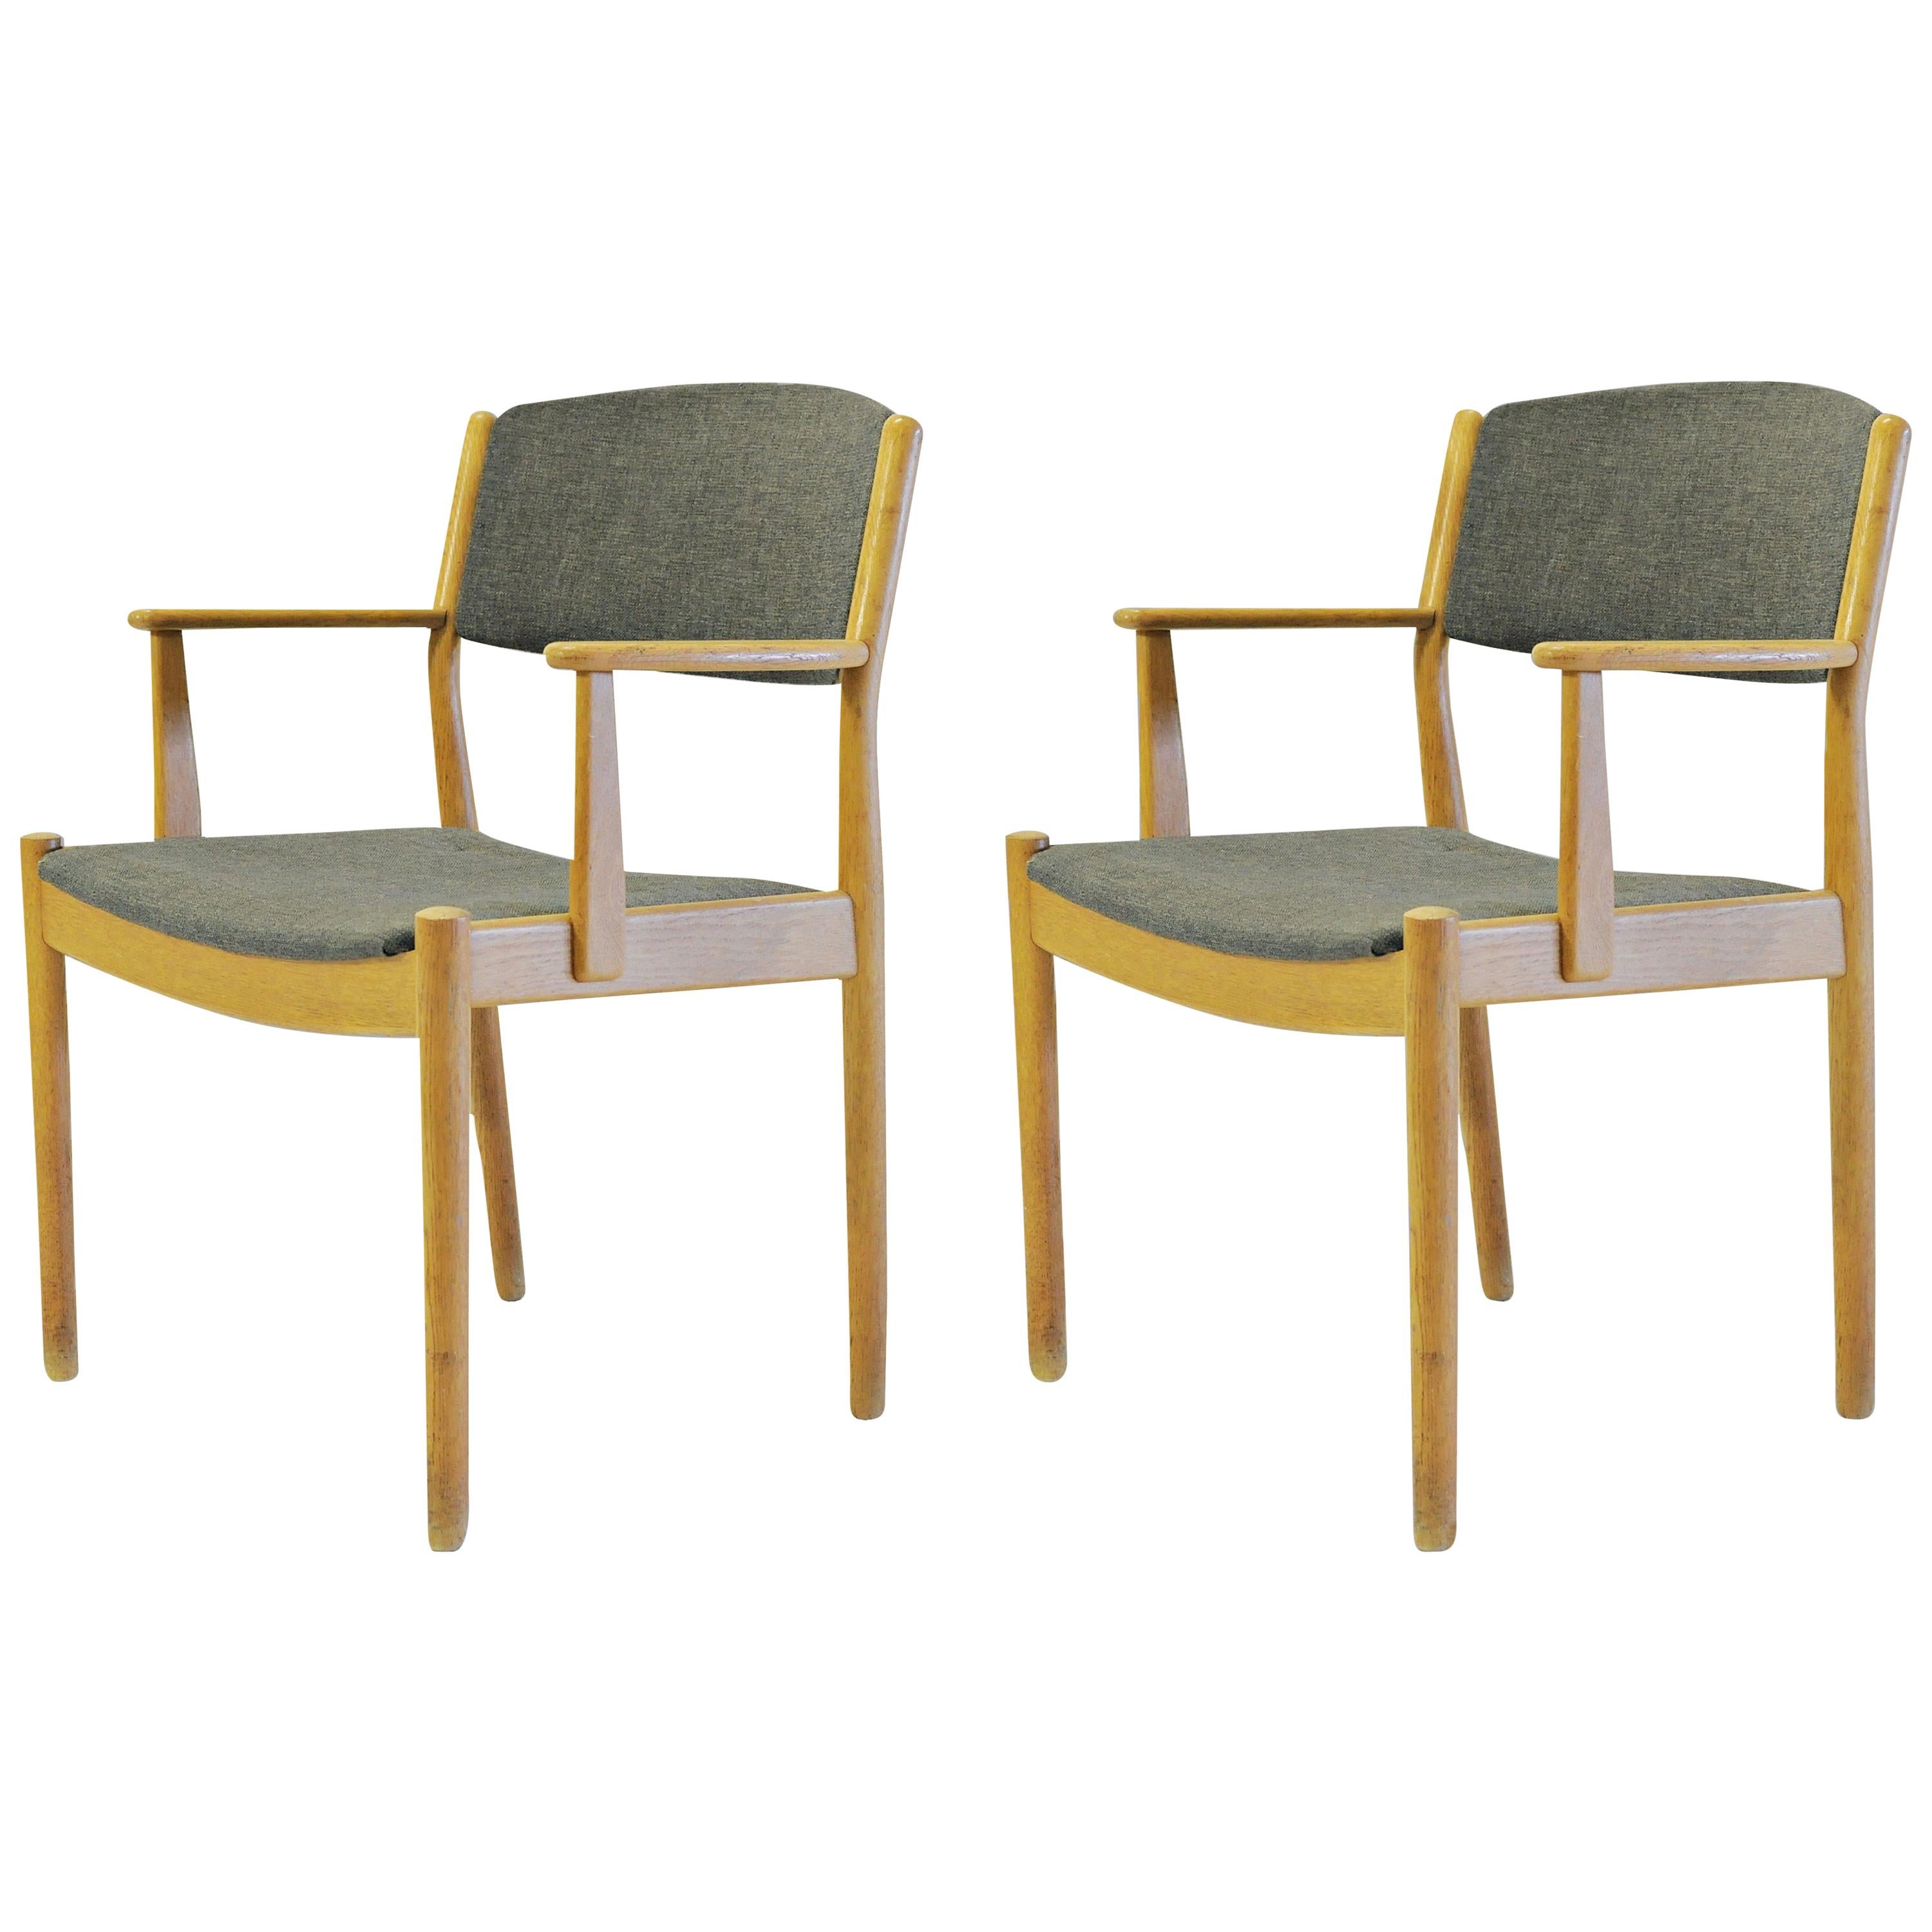 Ensemble de deux fauteuils danois Poul Volther restaurés en chêne, retapissés